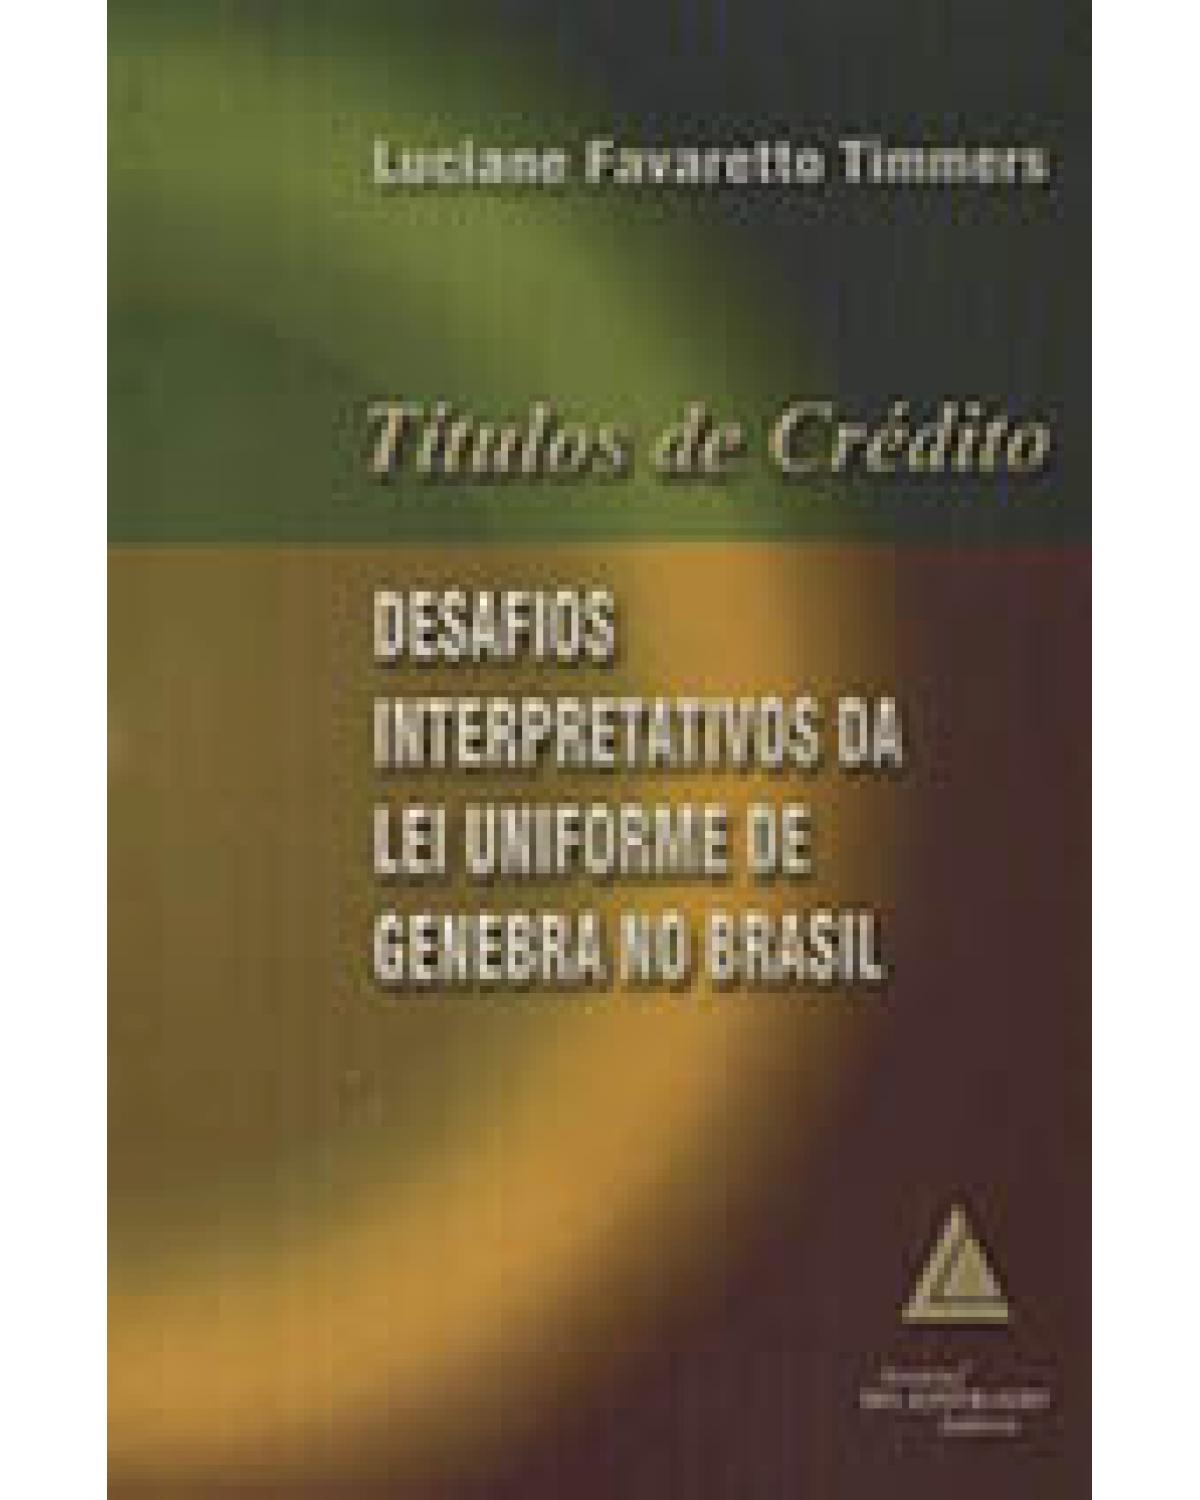 Títulos de crédito: Desafios interpretativos da Lei Uniforme de Genebra no Brasil - 1ª Edição | 2003